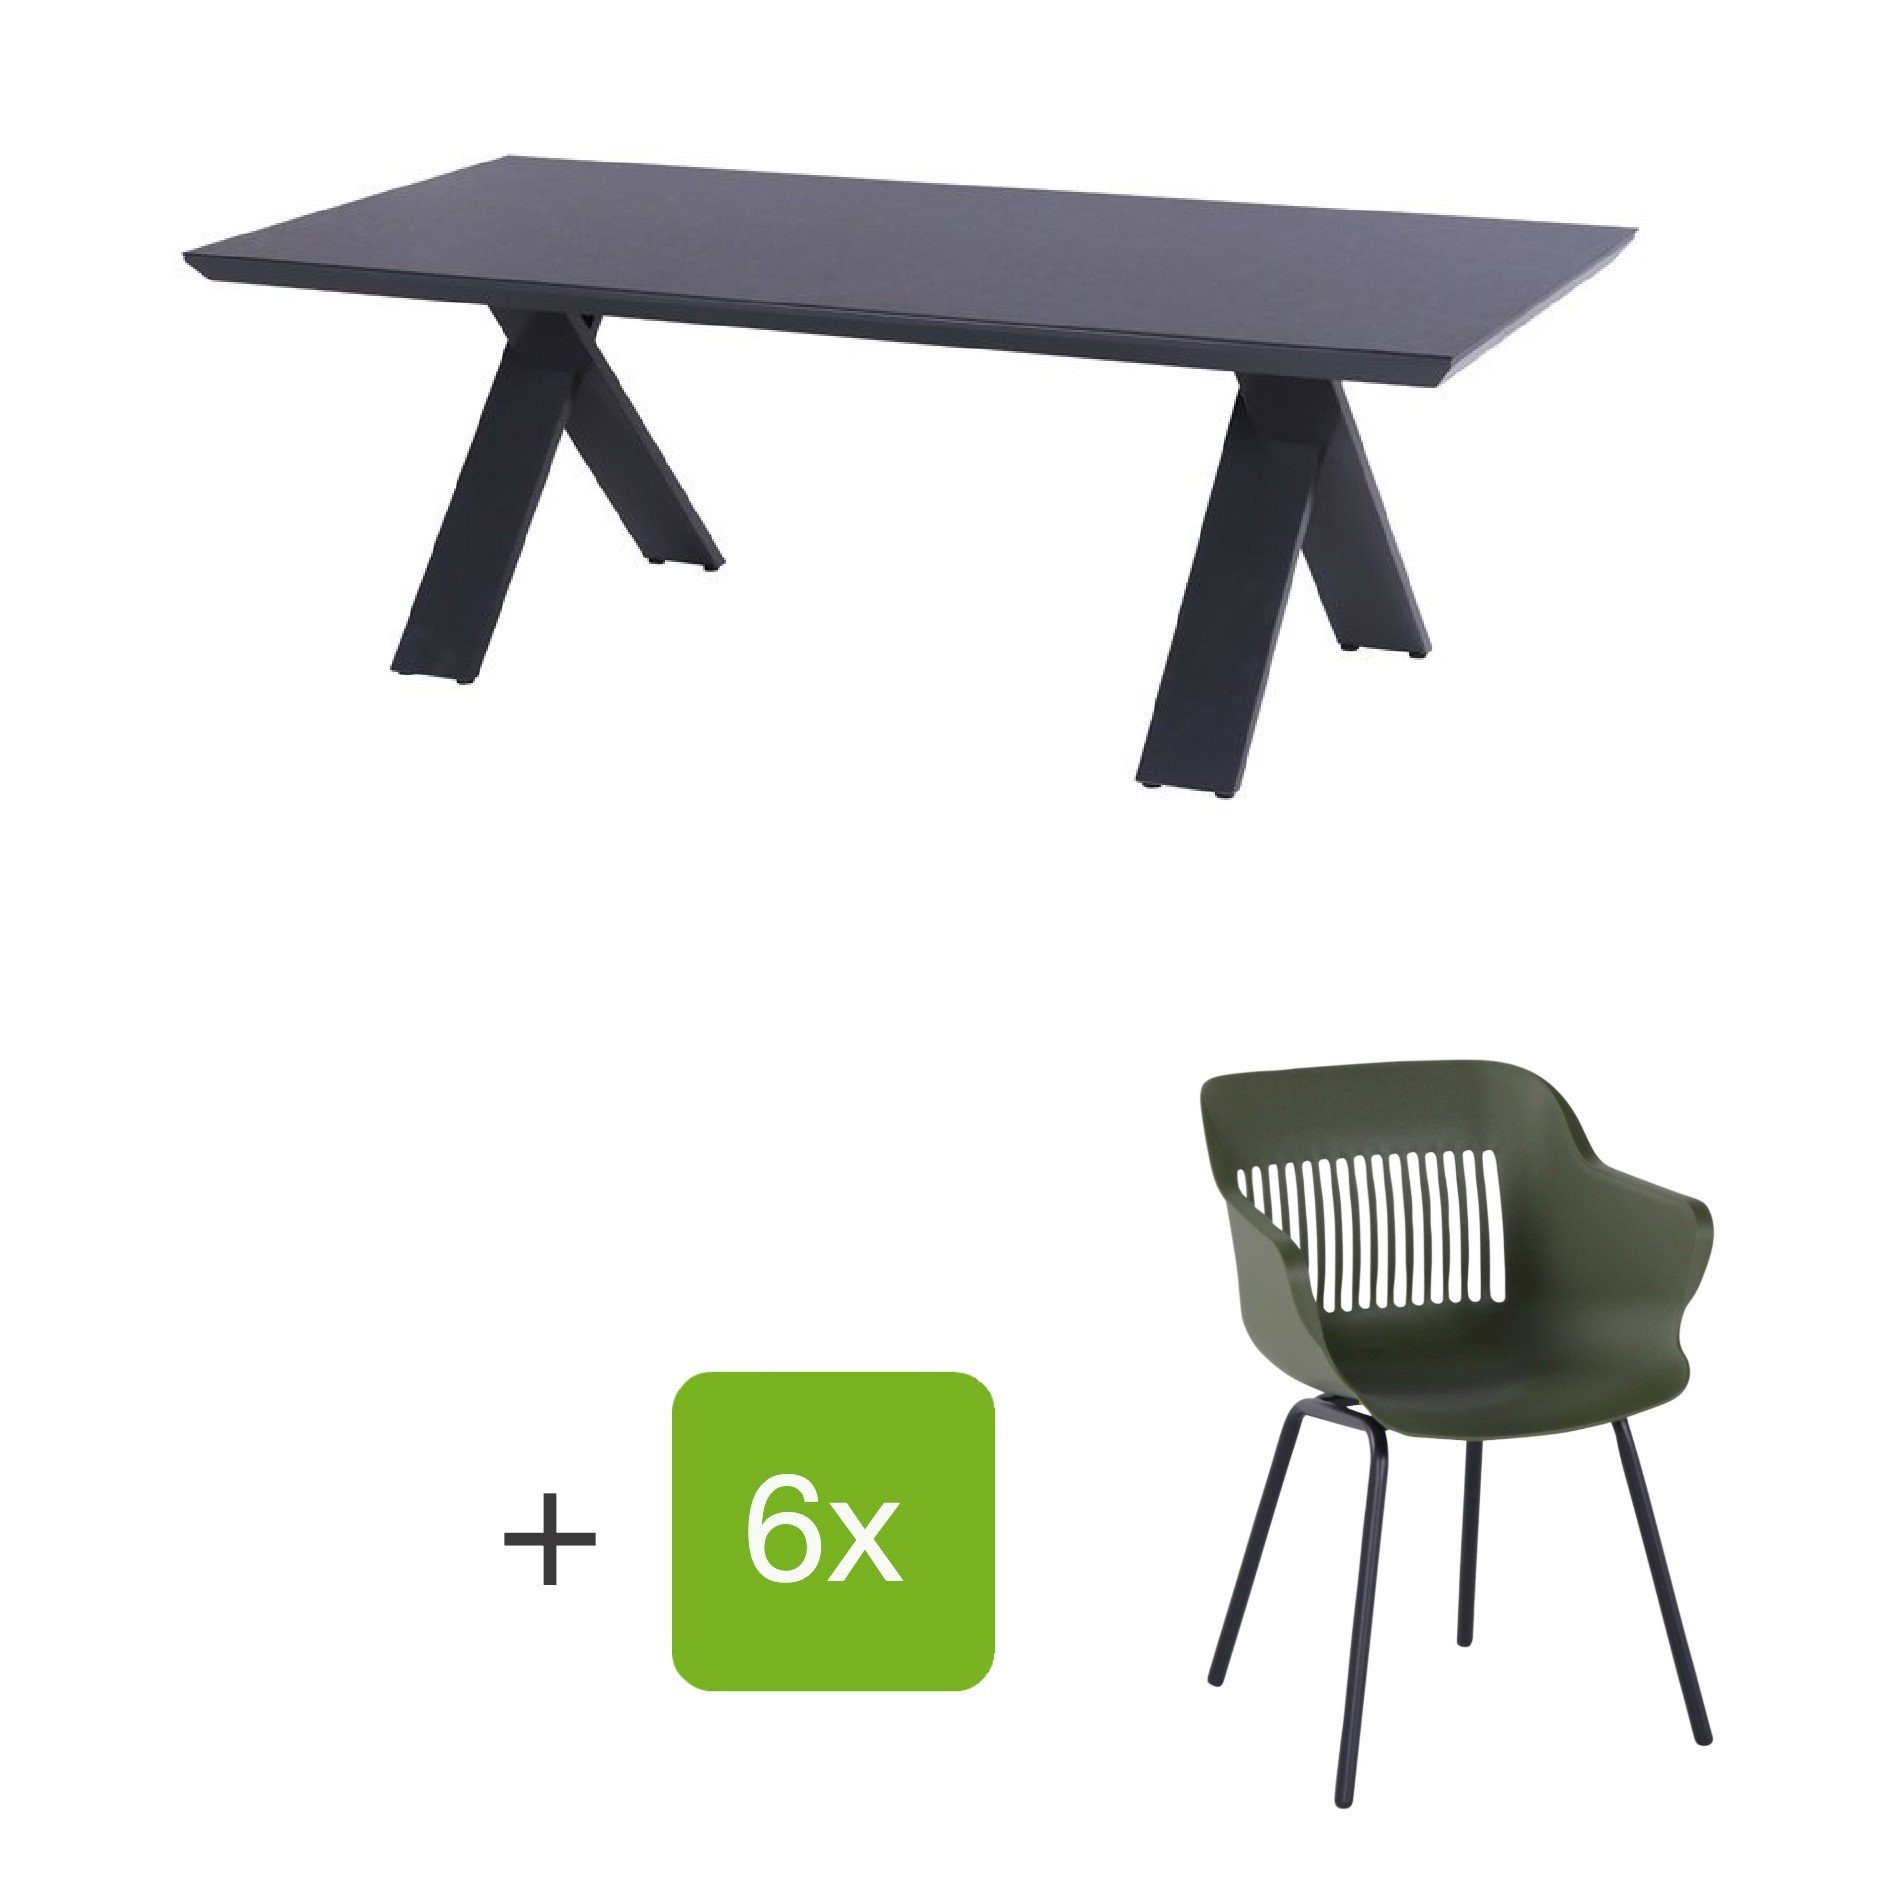 Hartman Gartenmöbel-Set mit Stuhl "Jill" und Gartentisch "Xanadu", Gestelle Aluminium xerix, Sitz Kunststoff moosgrün, Tischplatte HPL Anthrazit